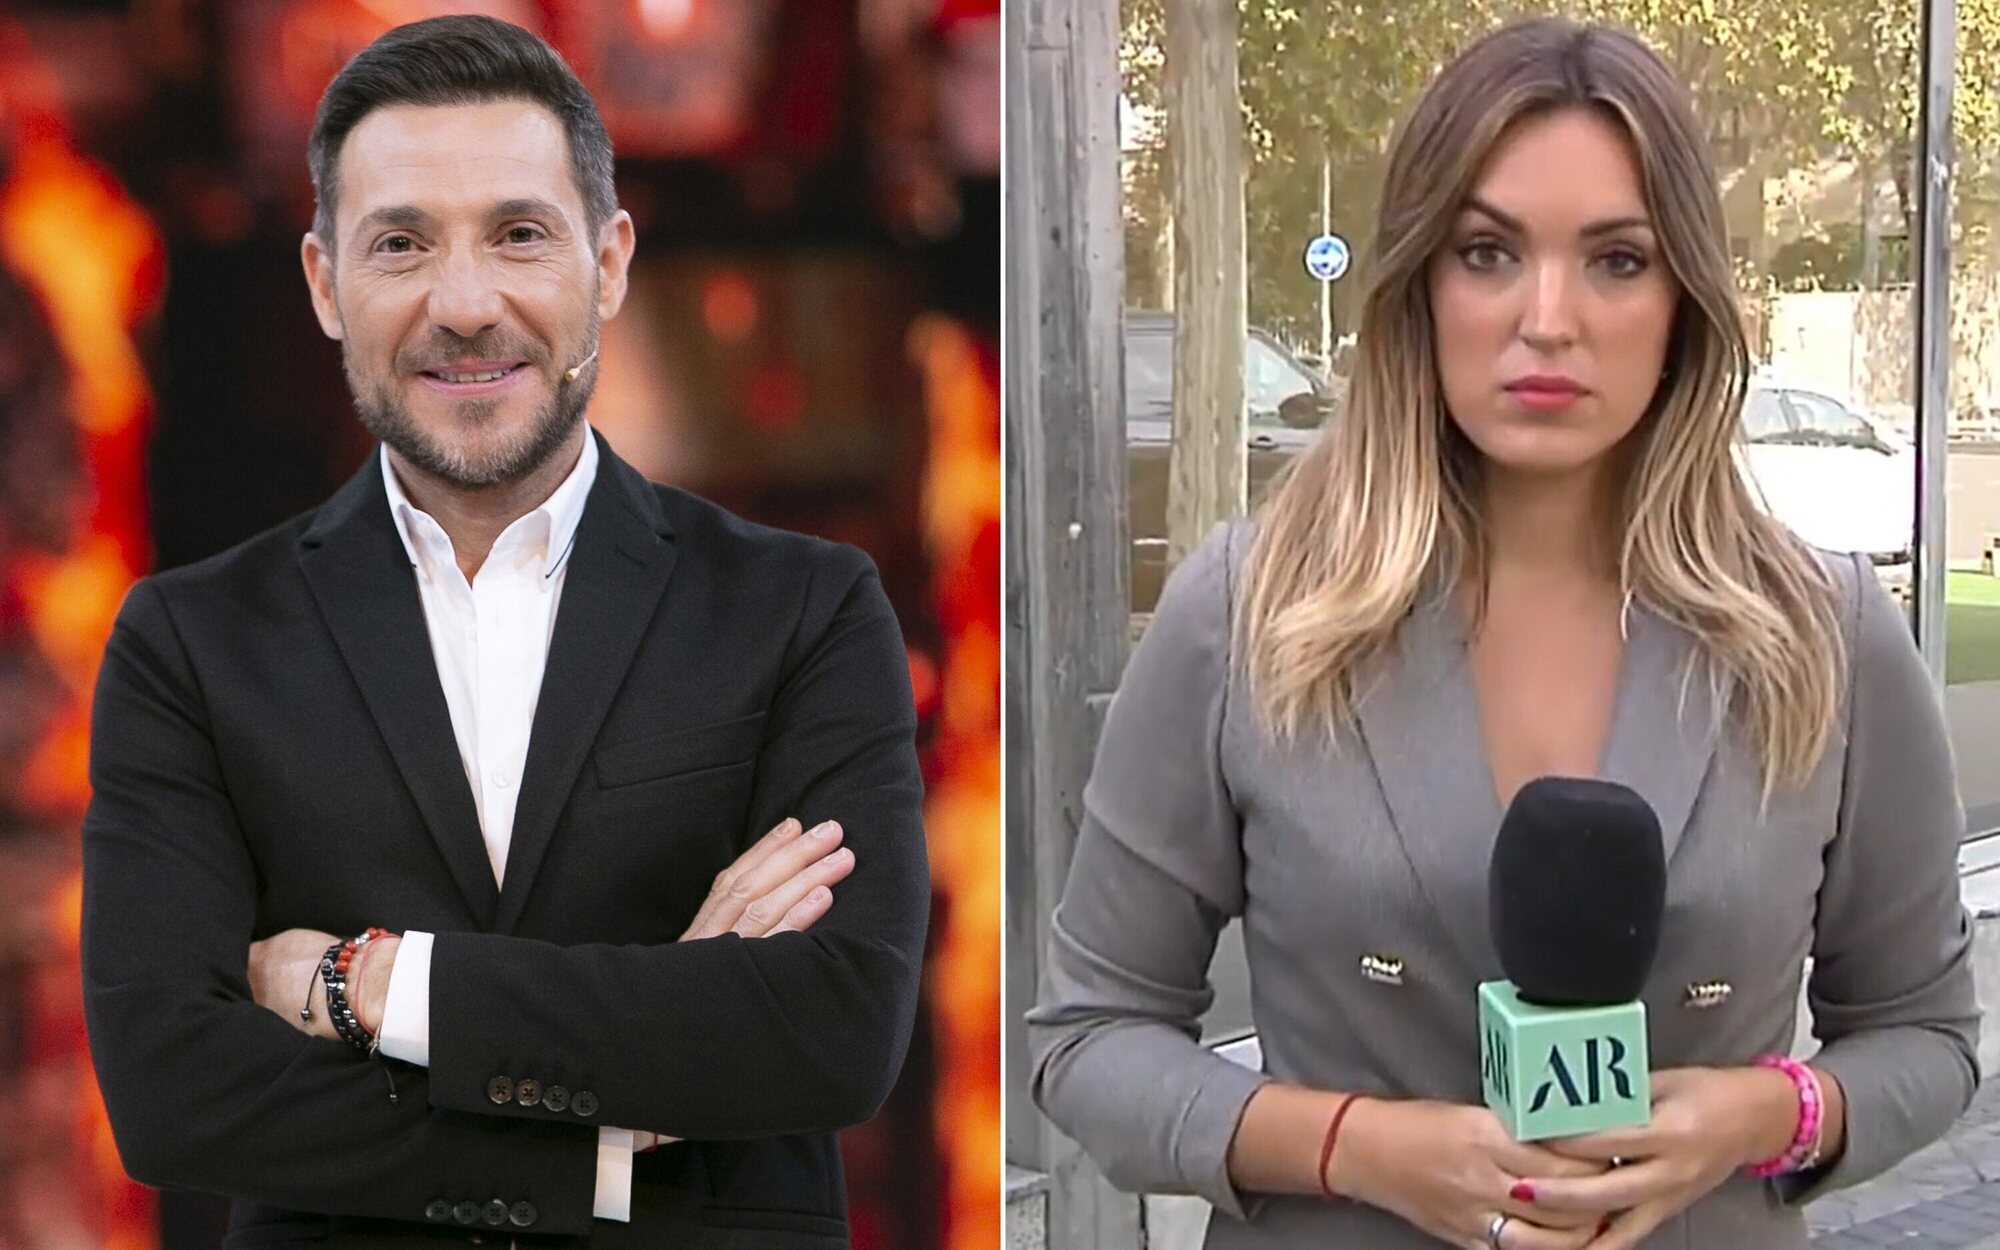 Antonio David tendría una "relación especial" con Marta Riesco, reportera de 'El programa de Ana Rosa'